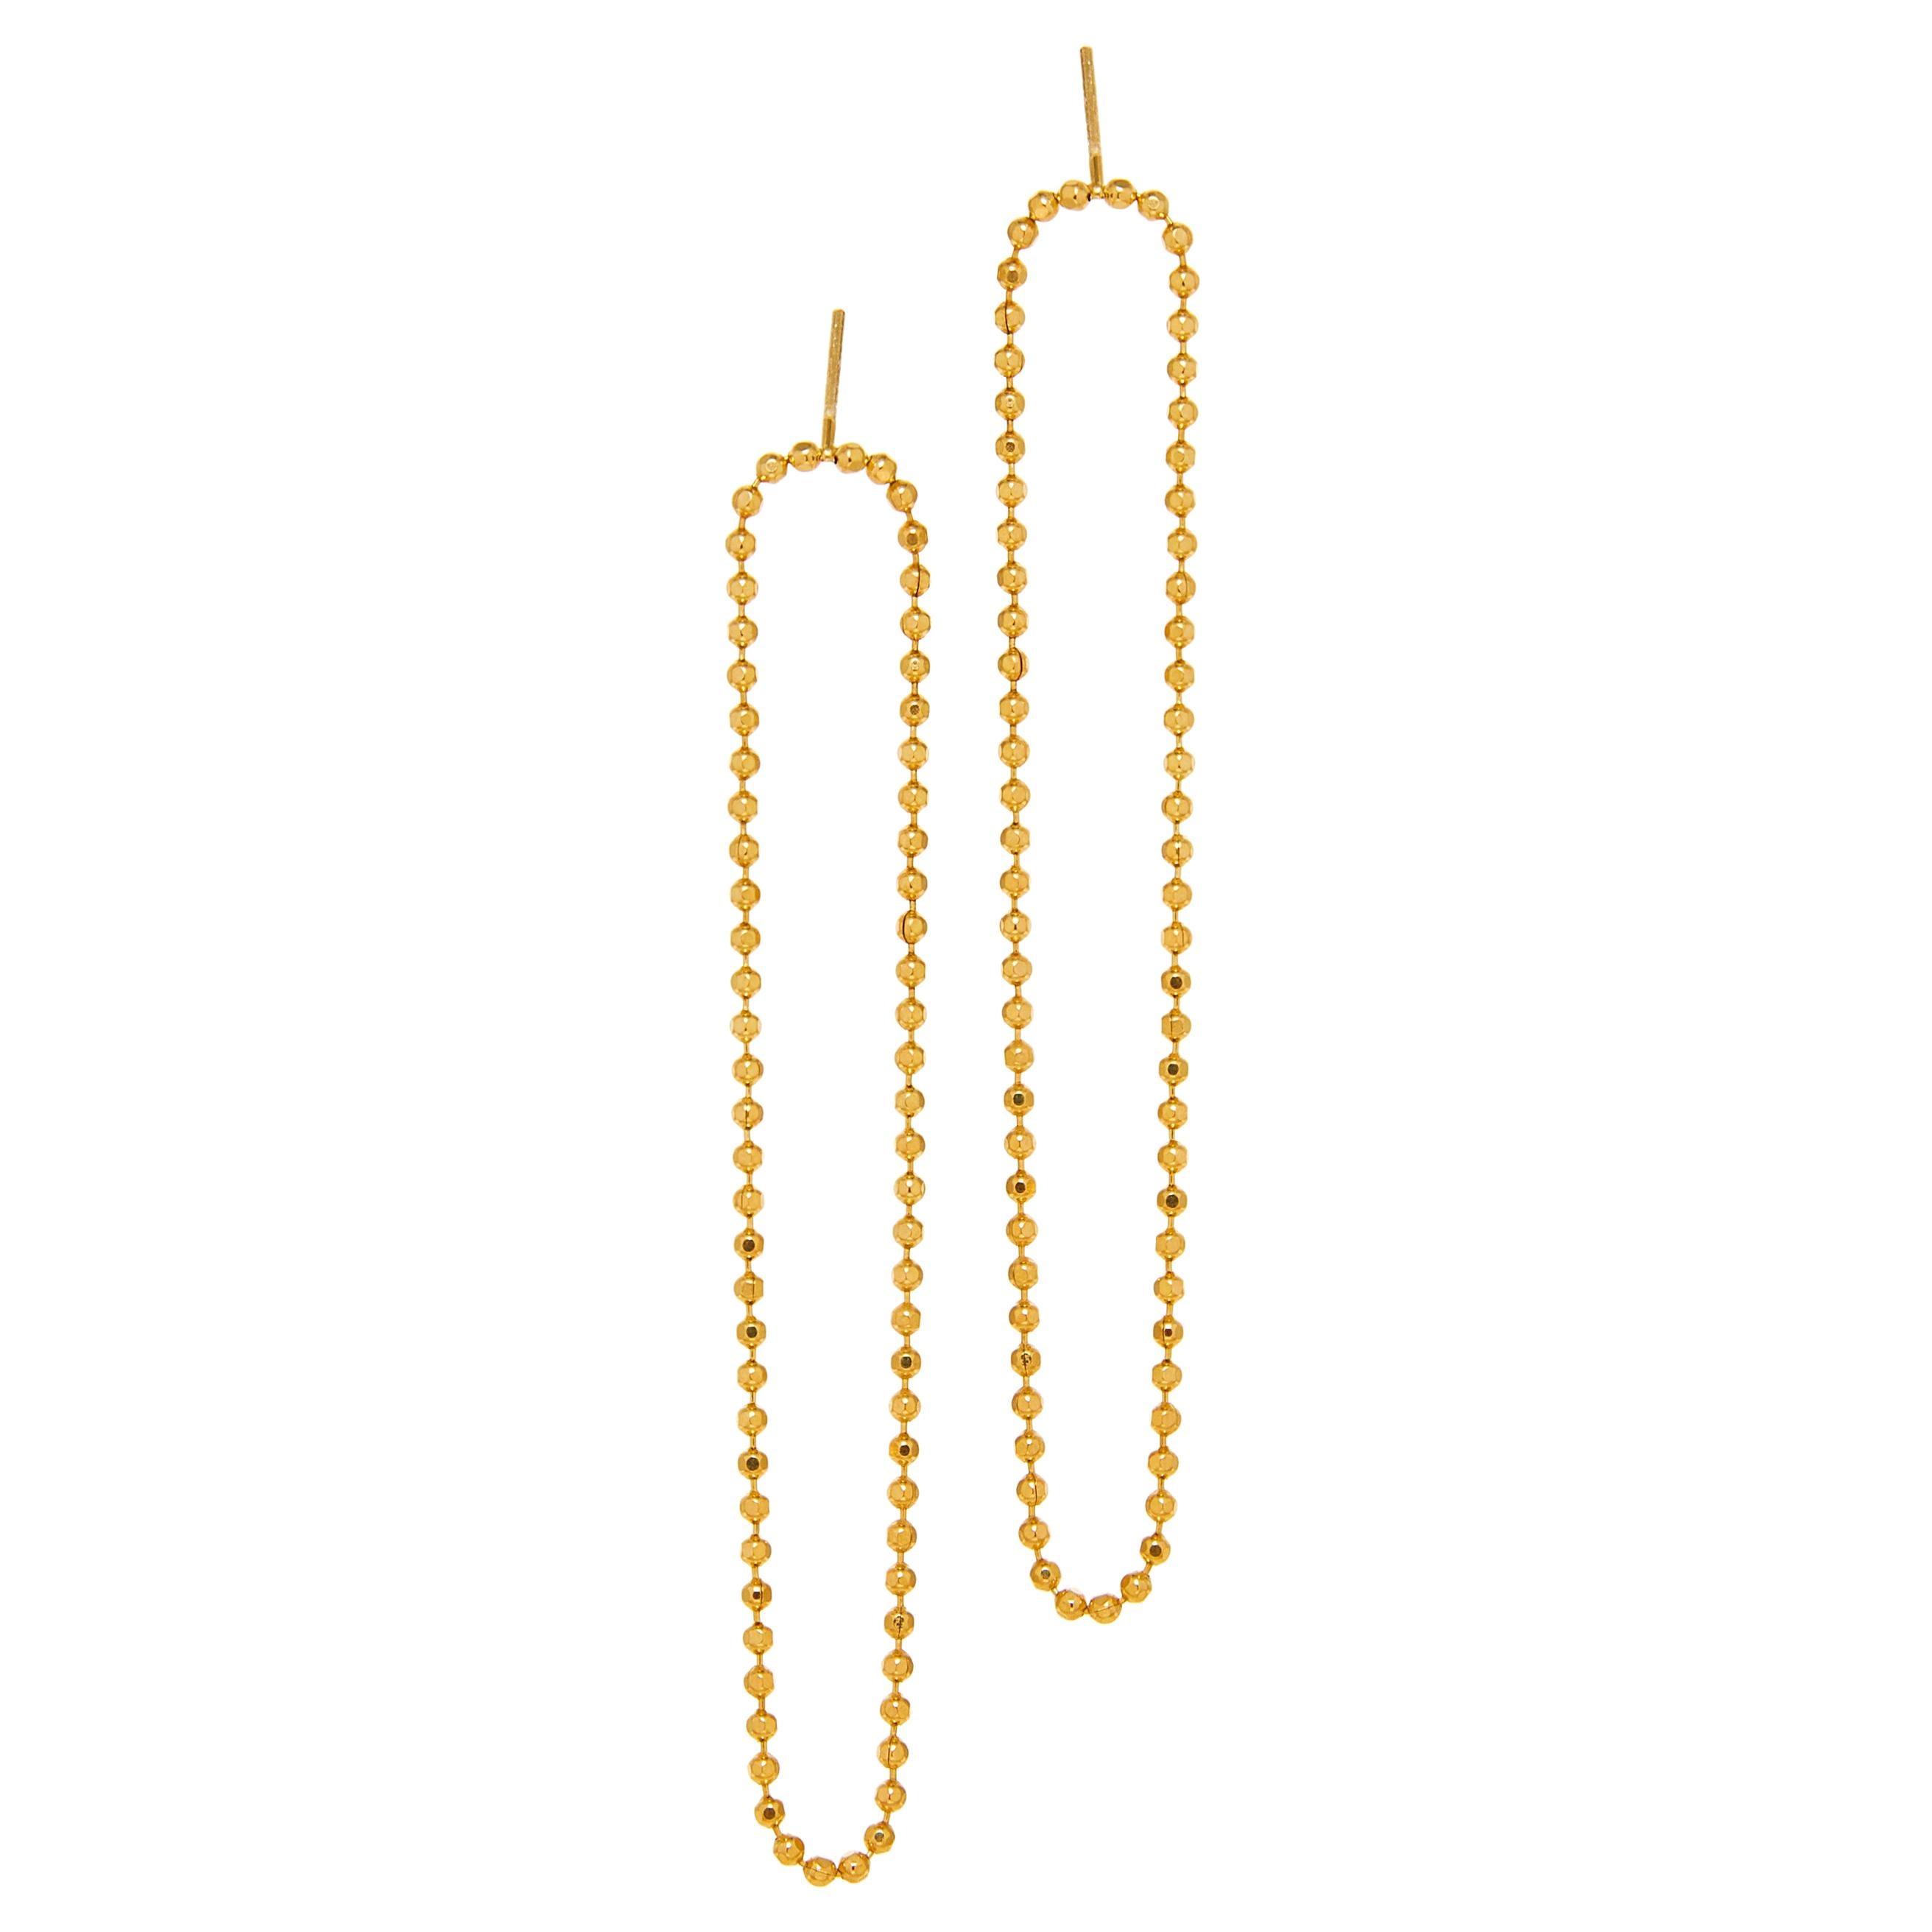 Earrings Long Slim Beaded Ball Motif Chain 18k Gold-Plated Silver Greek Jewelry